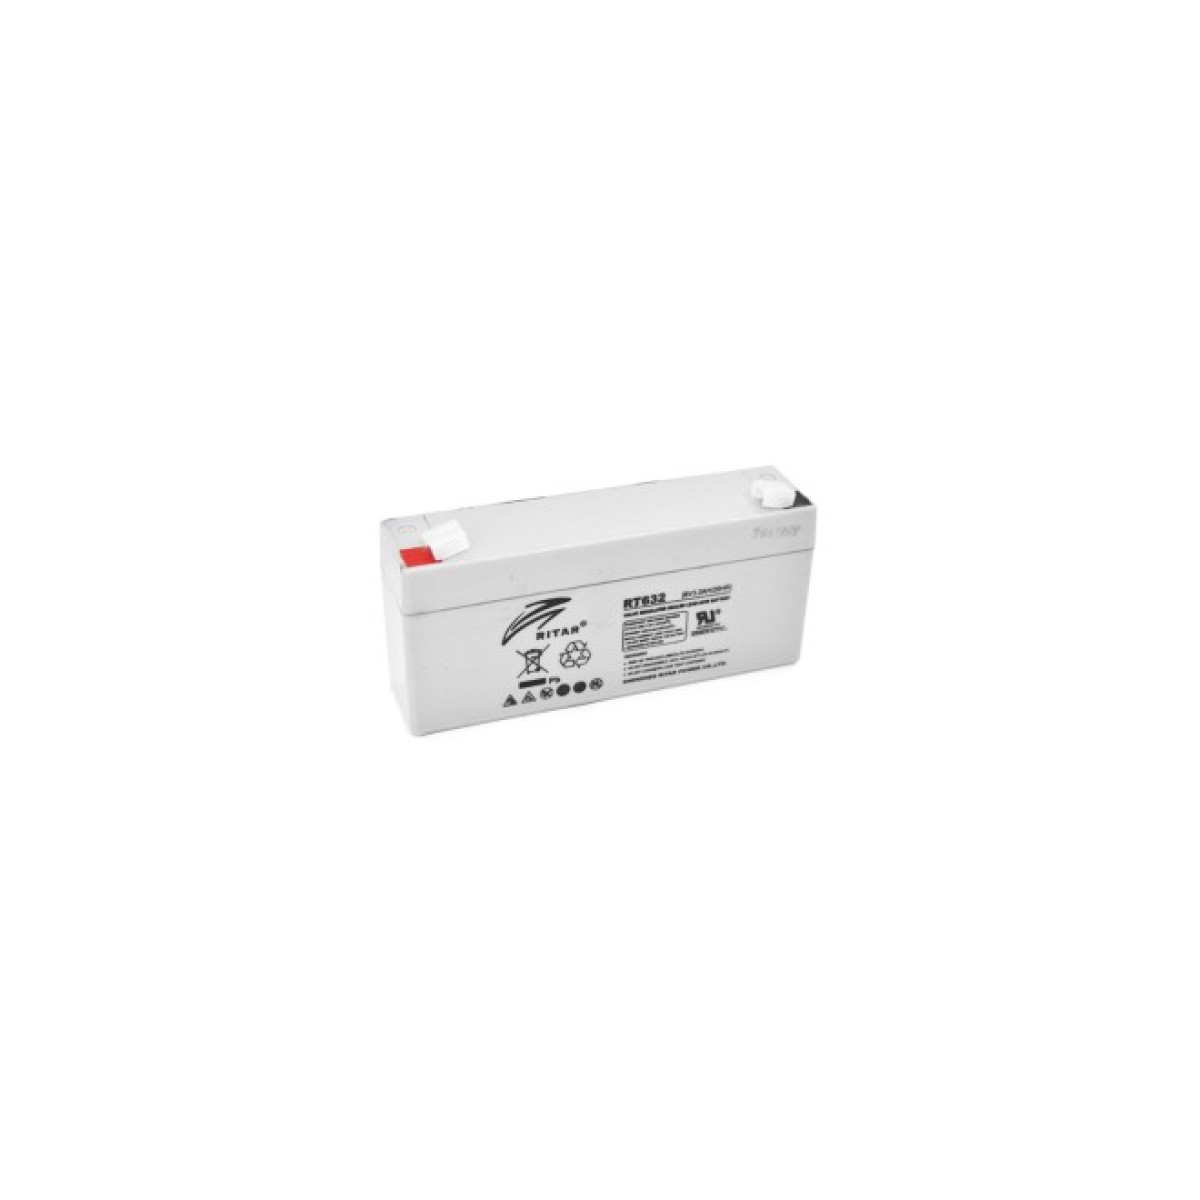 Батарея к ИБП Ritar AGM RT632, 6V-3.2Ah (RT632) 98_98.jpg